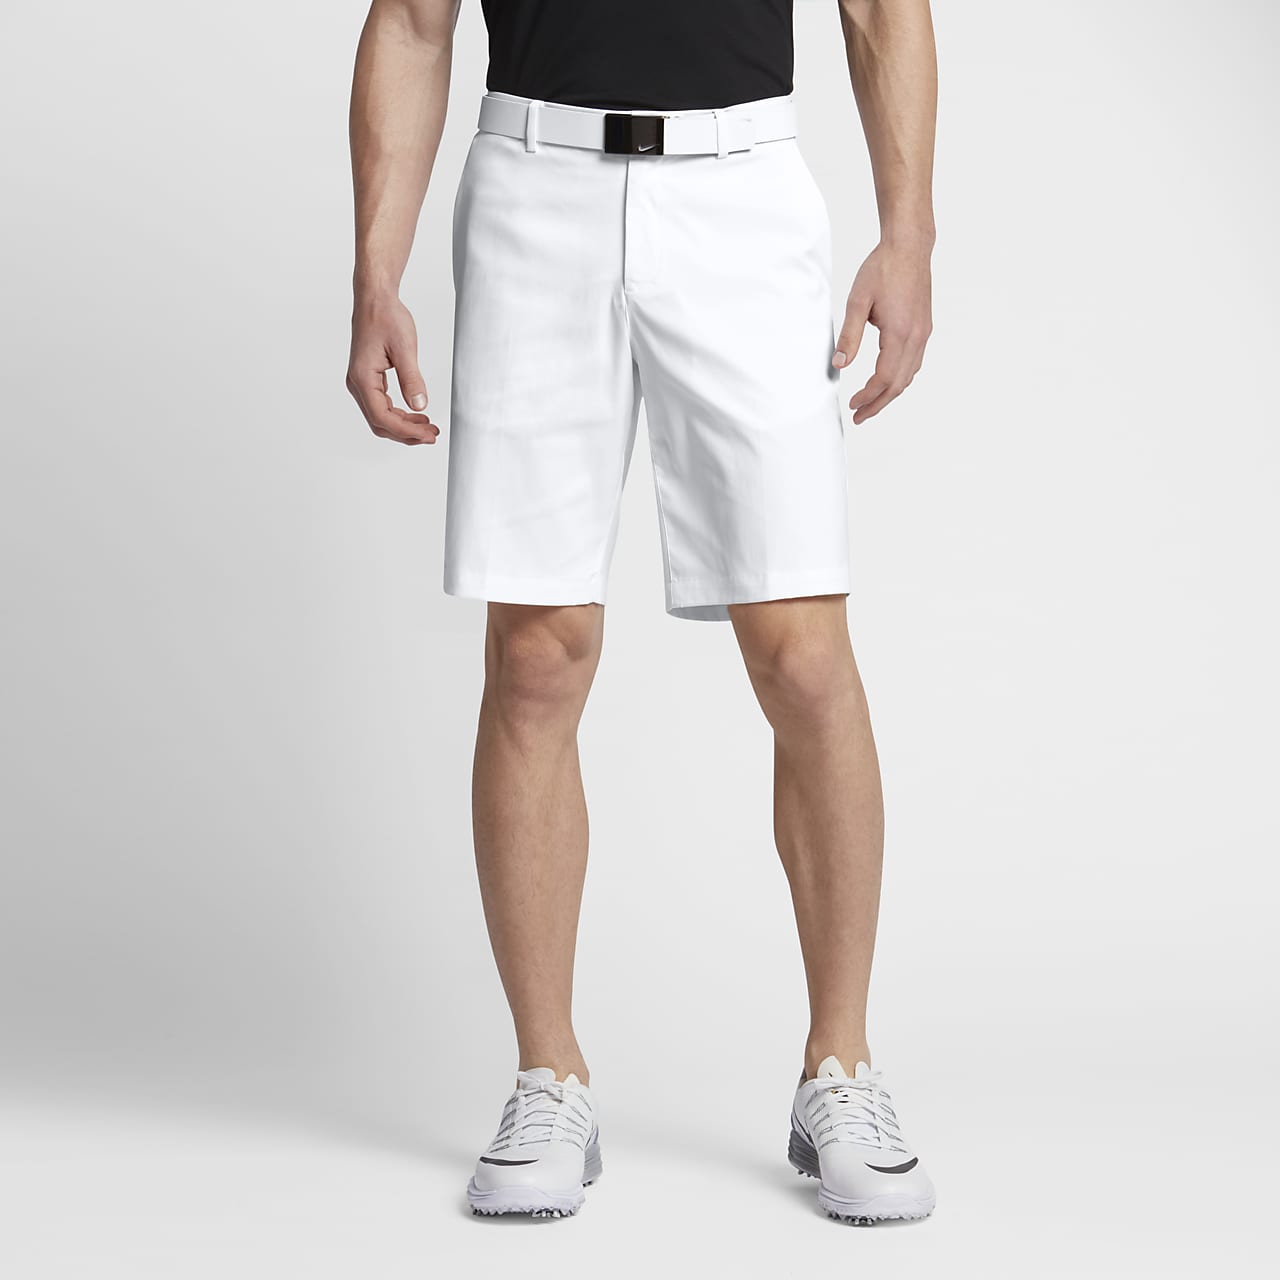 Nike Golf шорты мужские